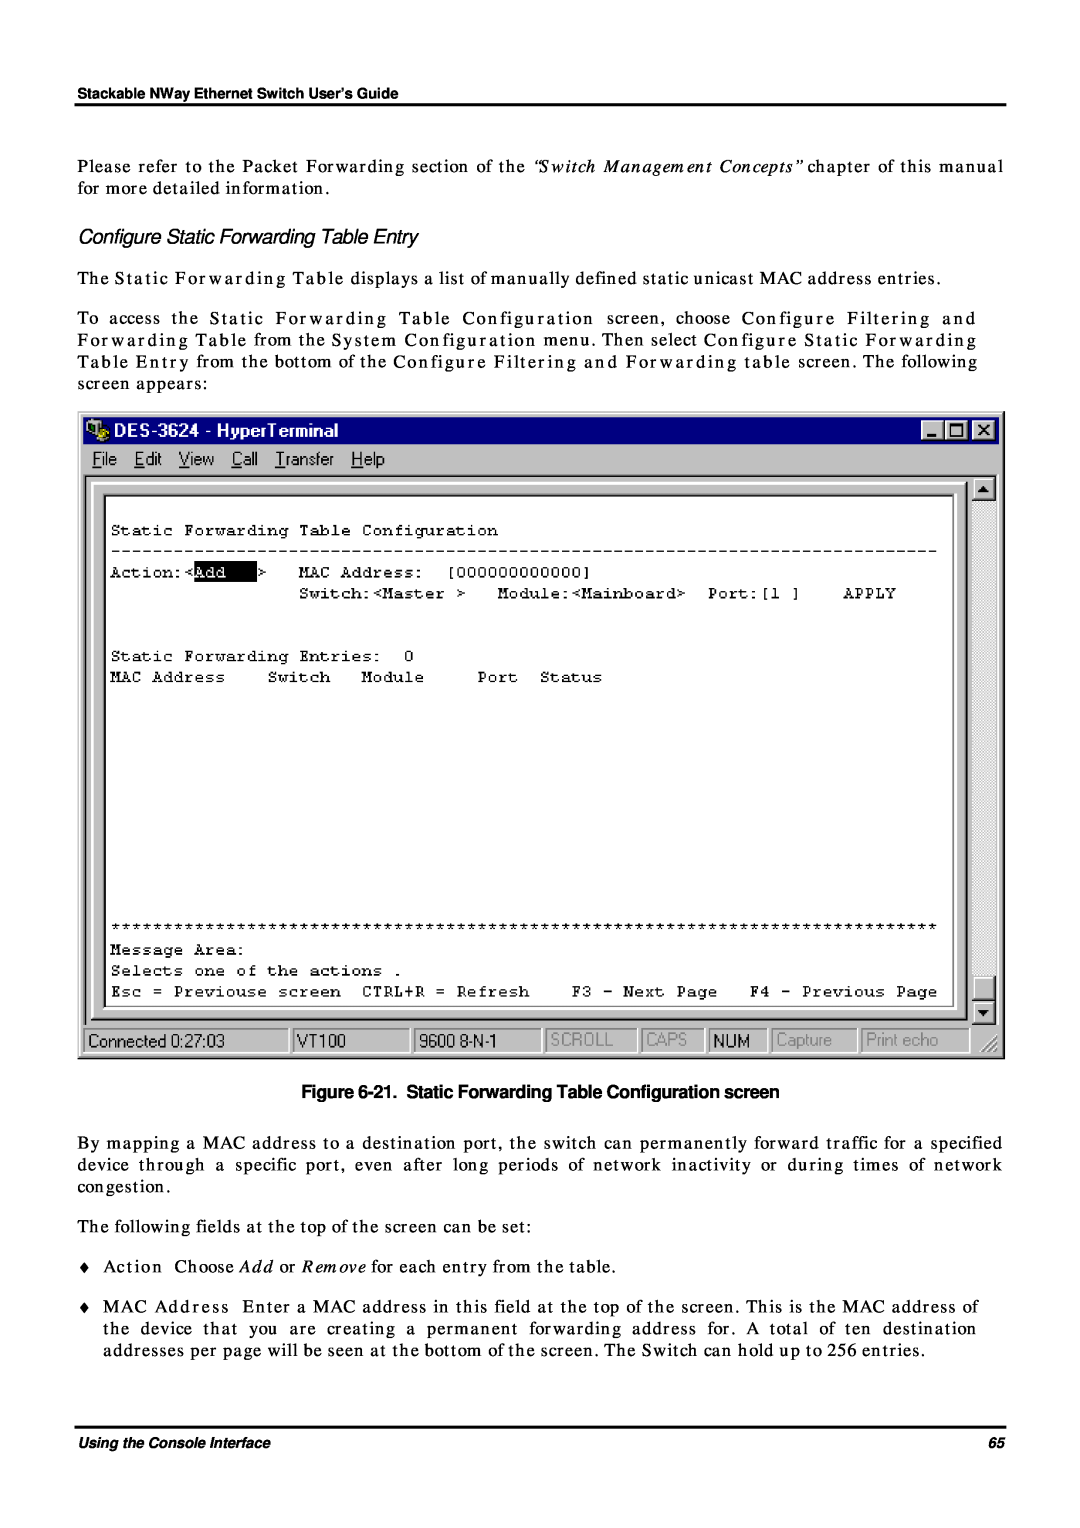 D-Link DES-3624 manual Configure Static Forwarding Table Entry, 21. Static Forwarding Table Configuration screen 